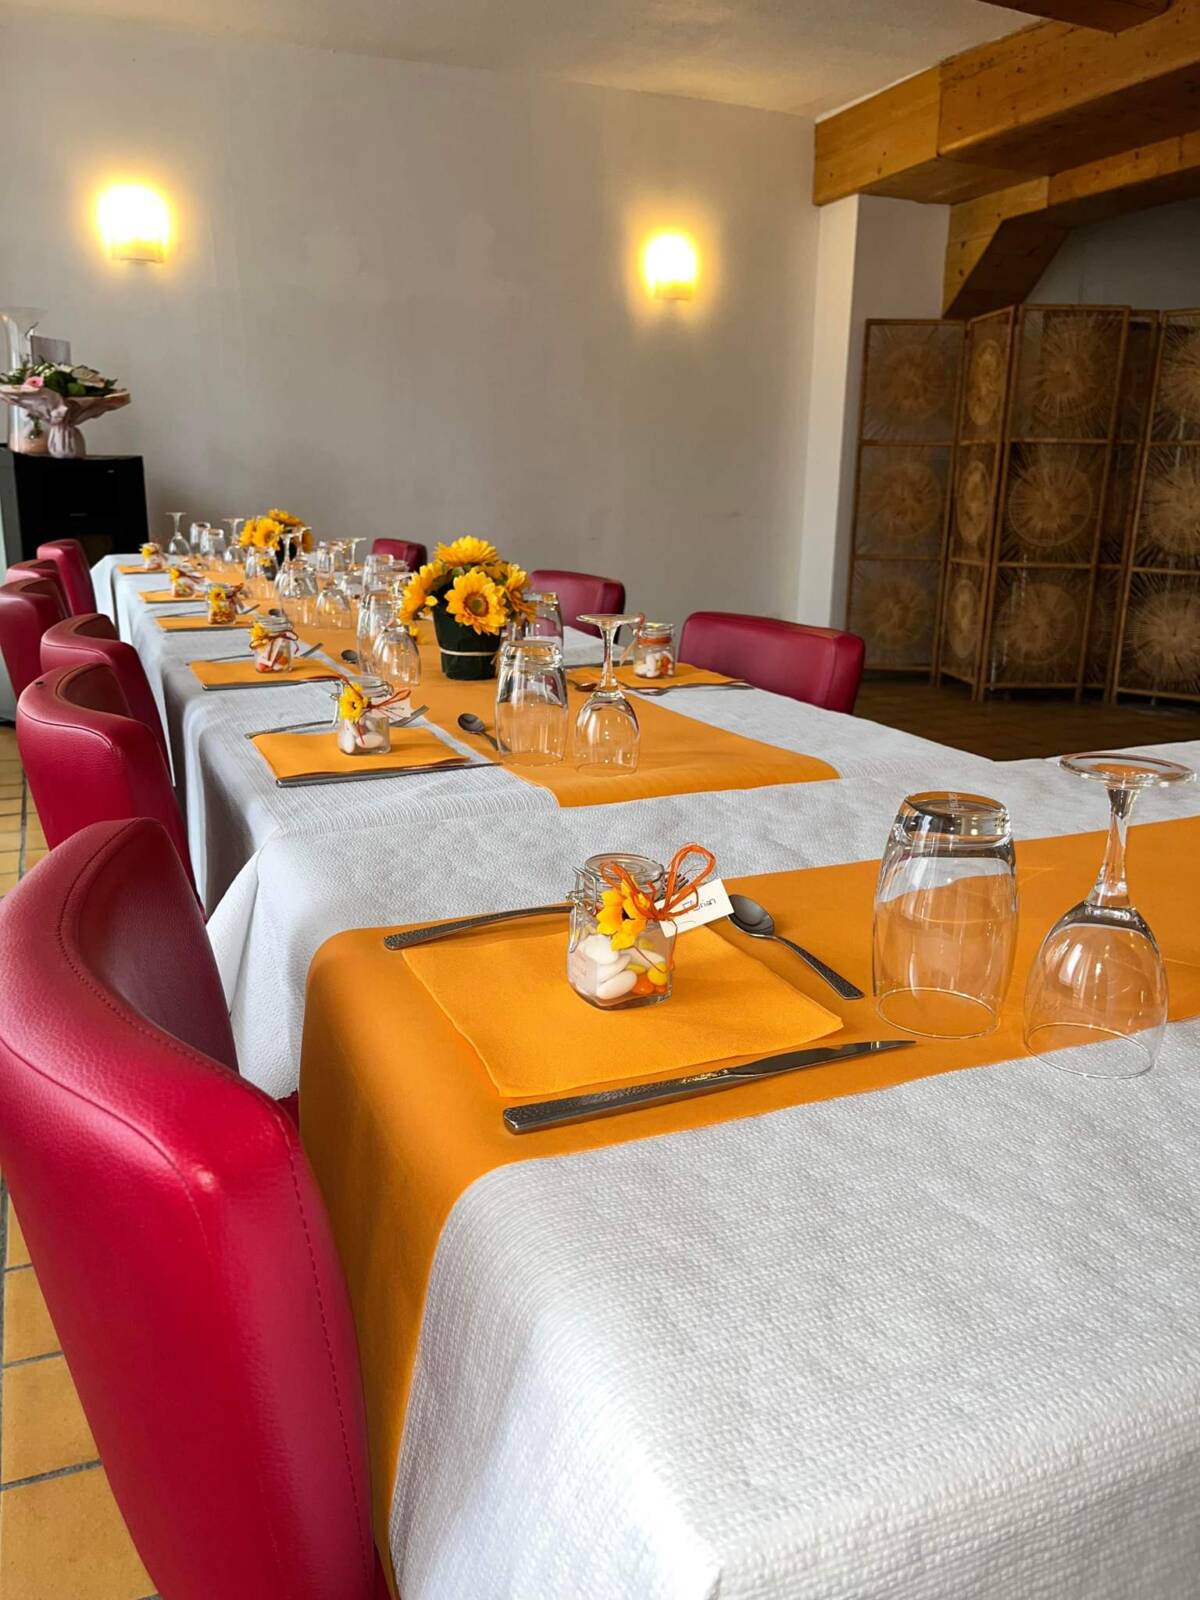 Location de restaurant avec salle privée pour évènement pro et personnel à Dieuze vers l’étang de Lindre Sarreguemines 4